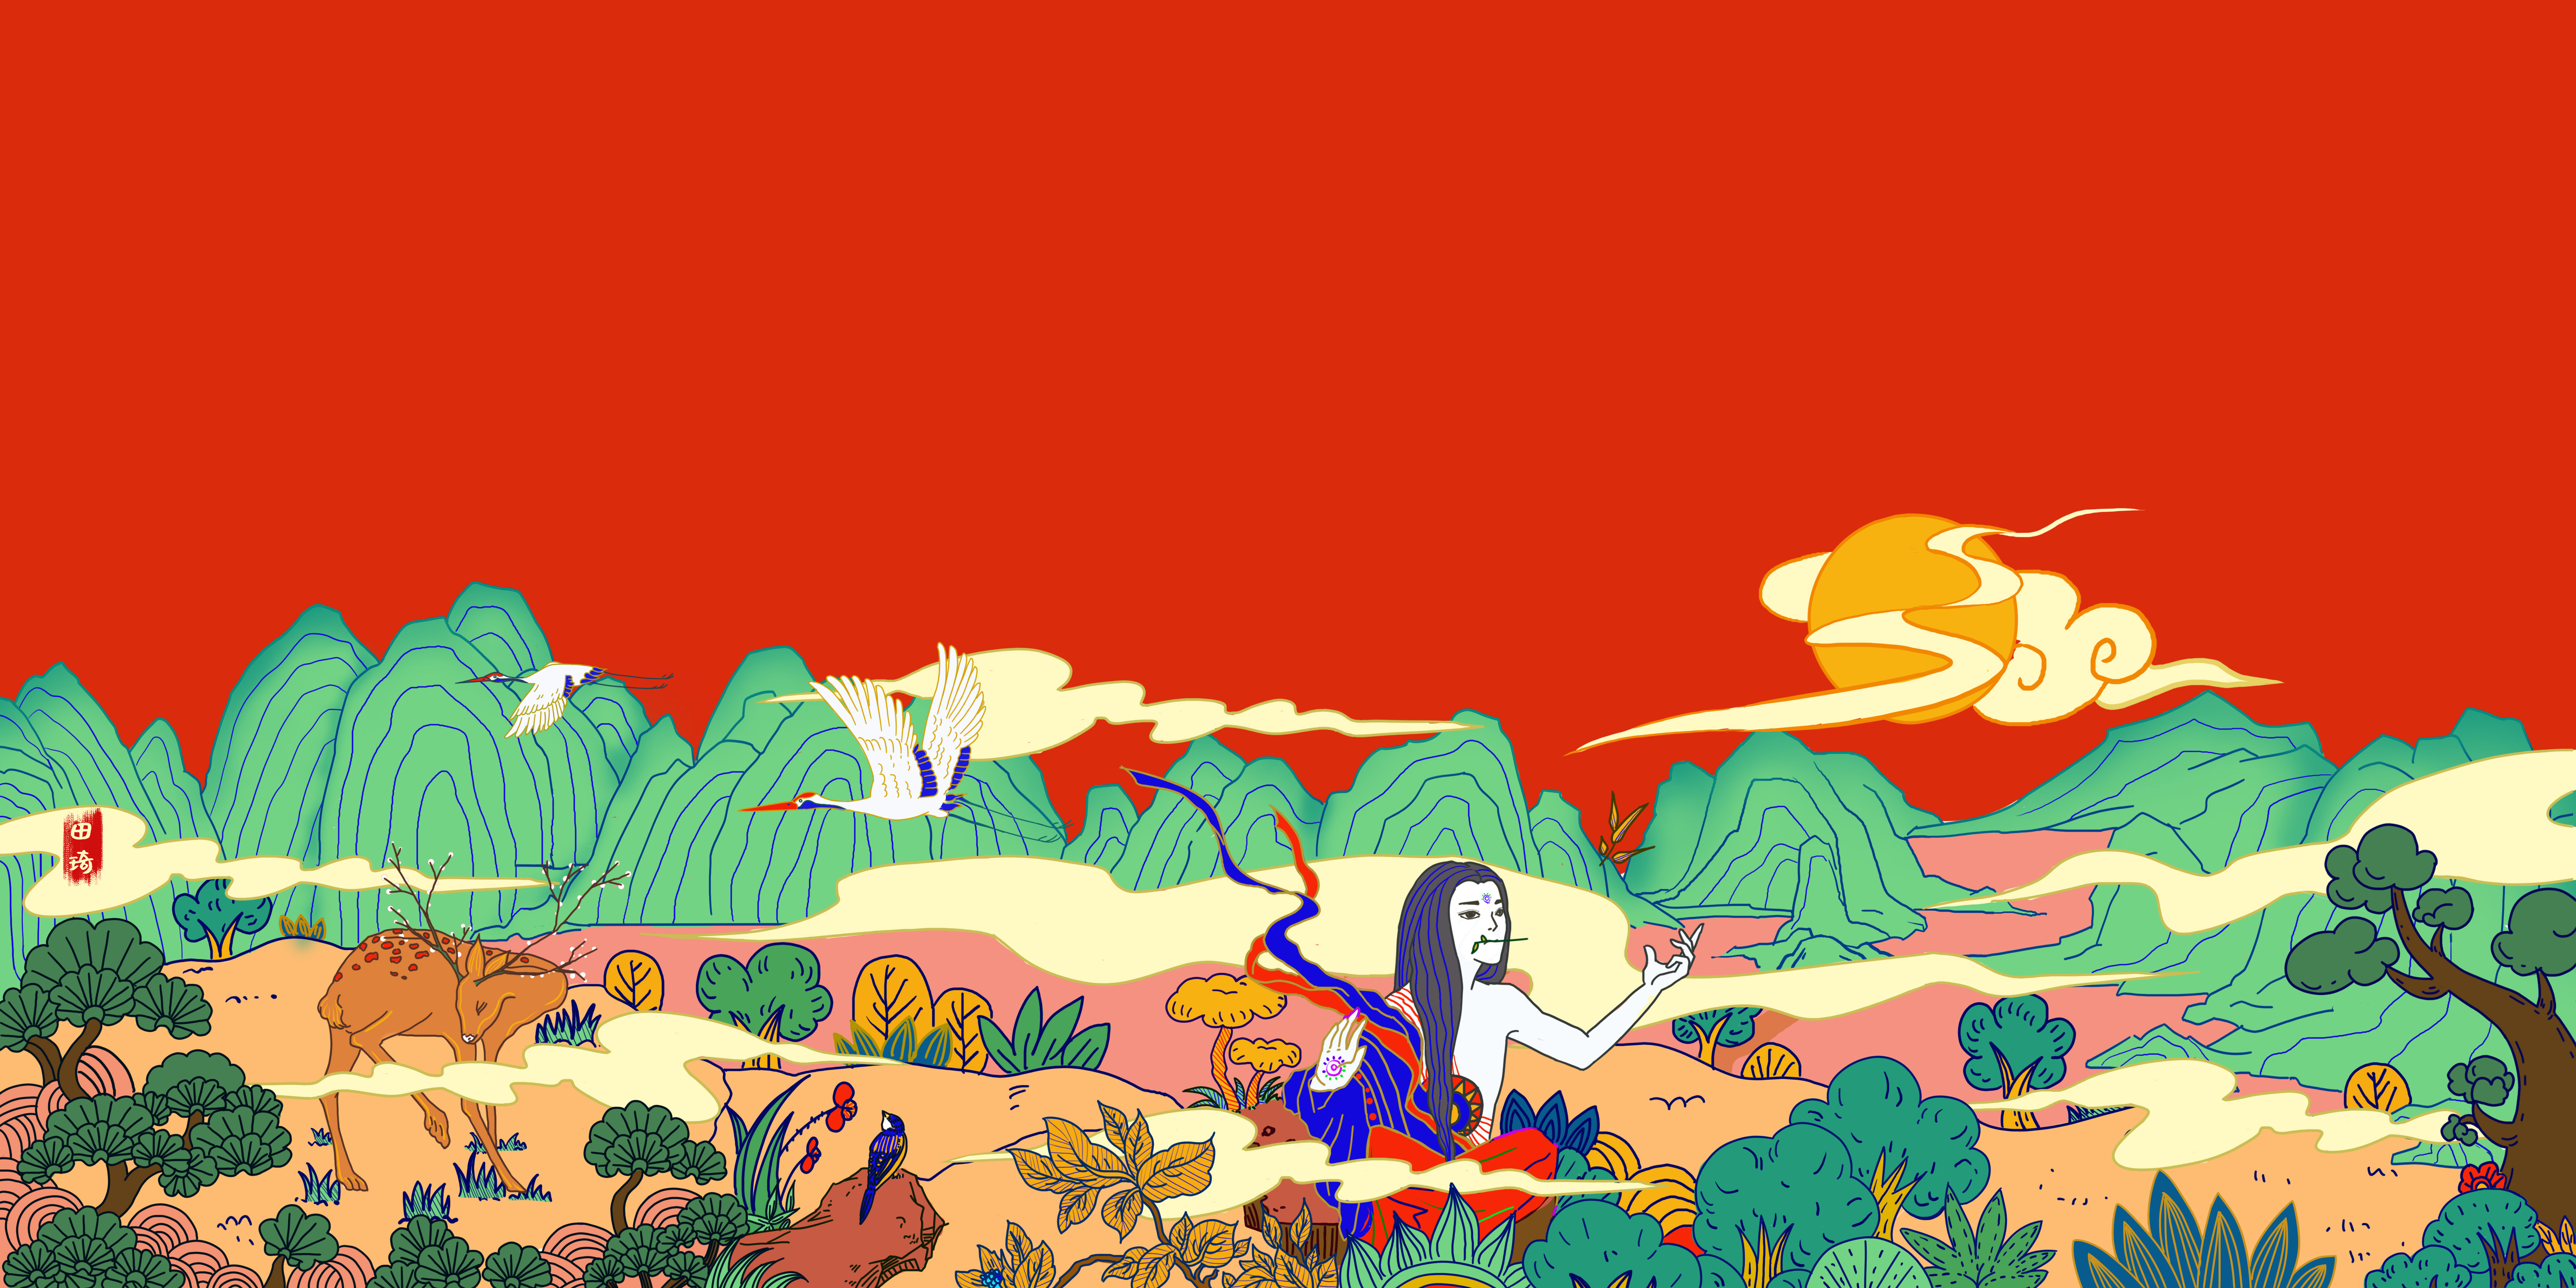 神农尝百草为主题,练习一下偏国风的插画杭州/动画师/3年前/390浏览田